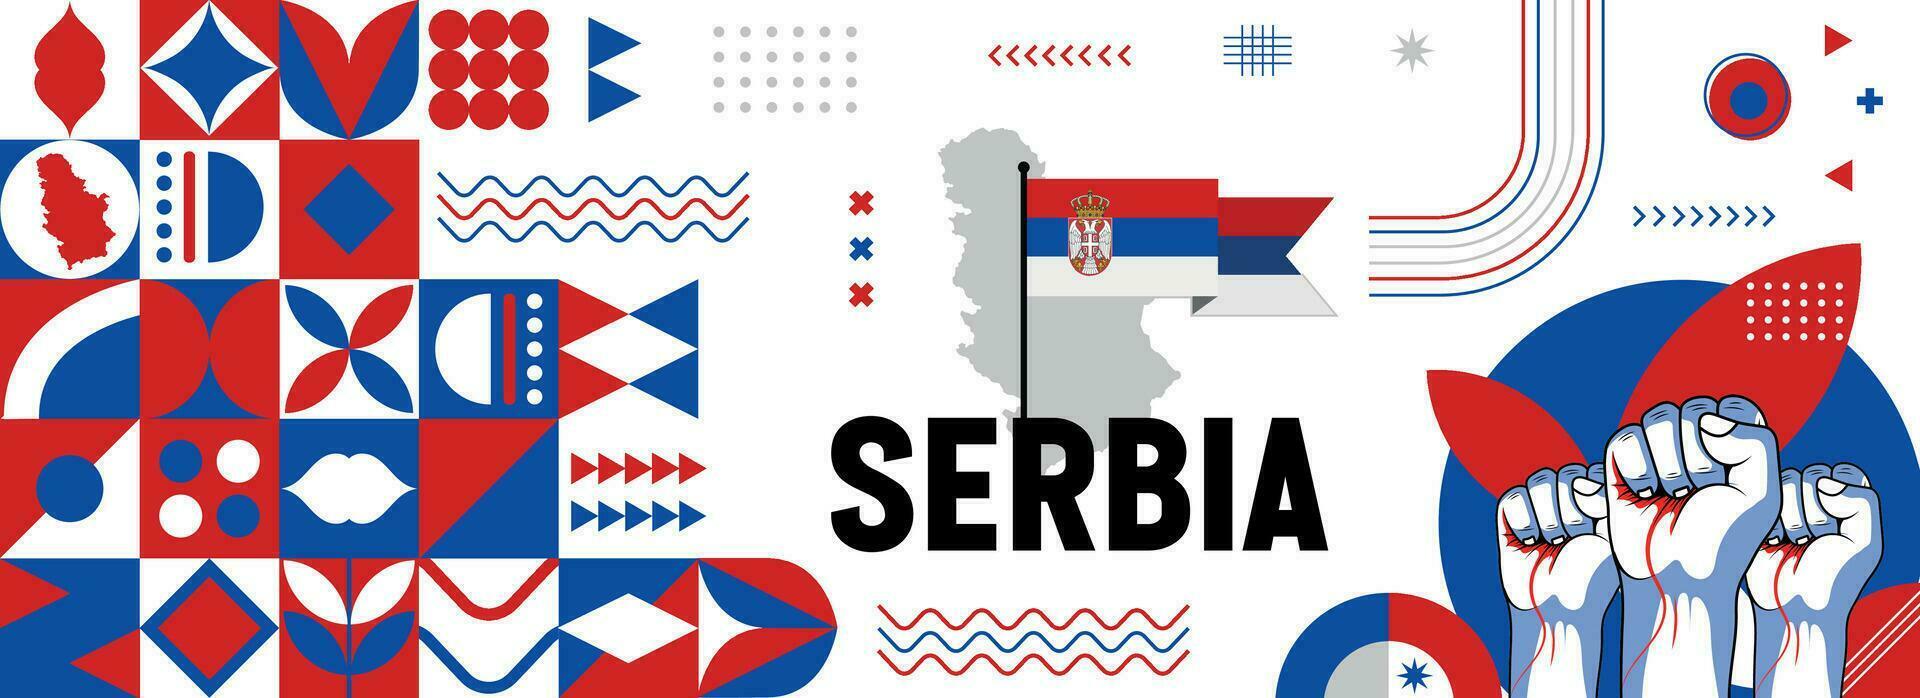 Serbie nationale ou indépendance journée bannière pour pays fête. drapeau et carte de Serbie avec élevé poings. moderne rétro conception avec typorgaphie abstrait géométrique Icônes. vecteur illustration.